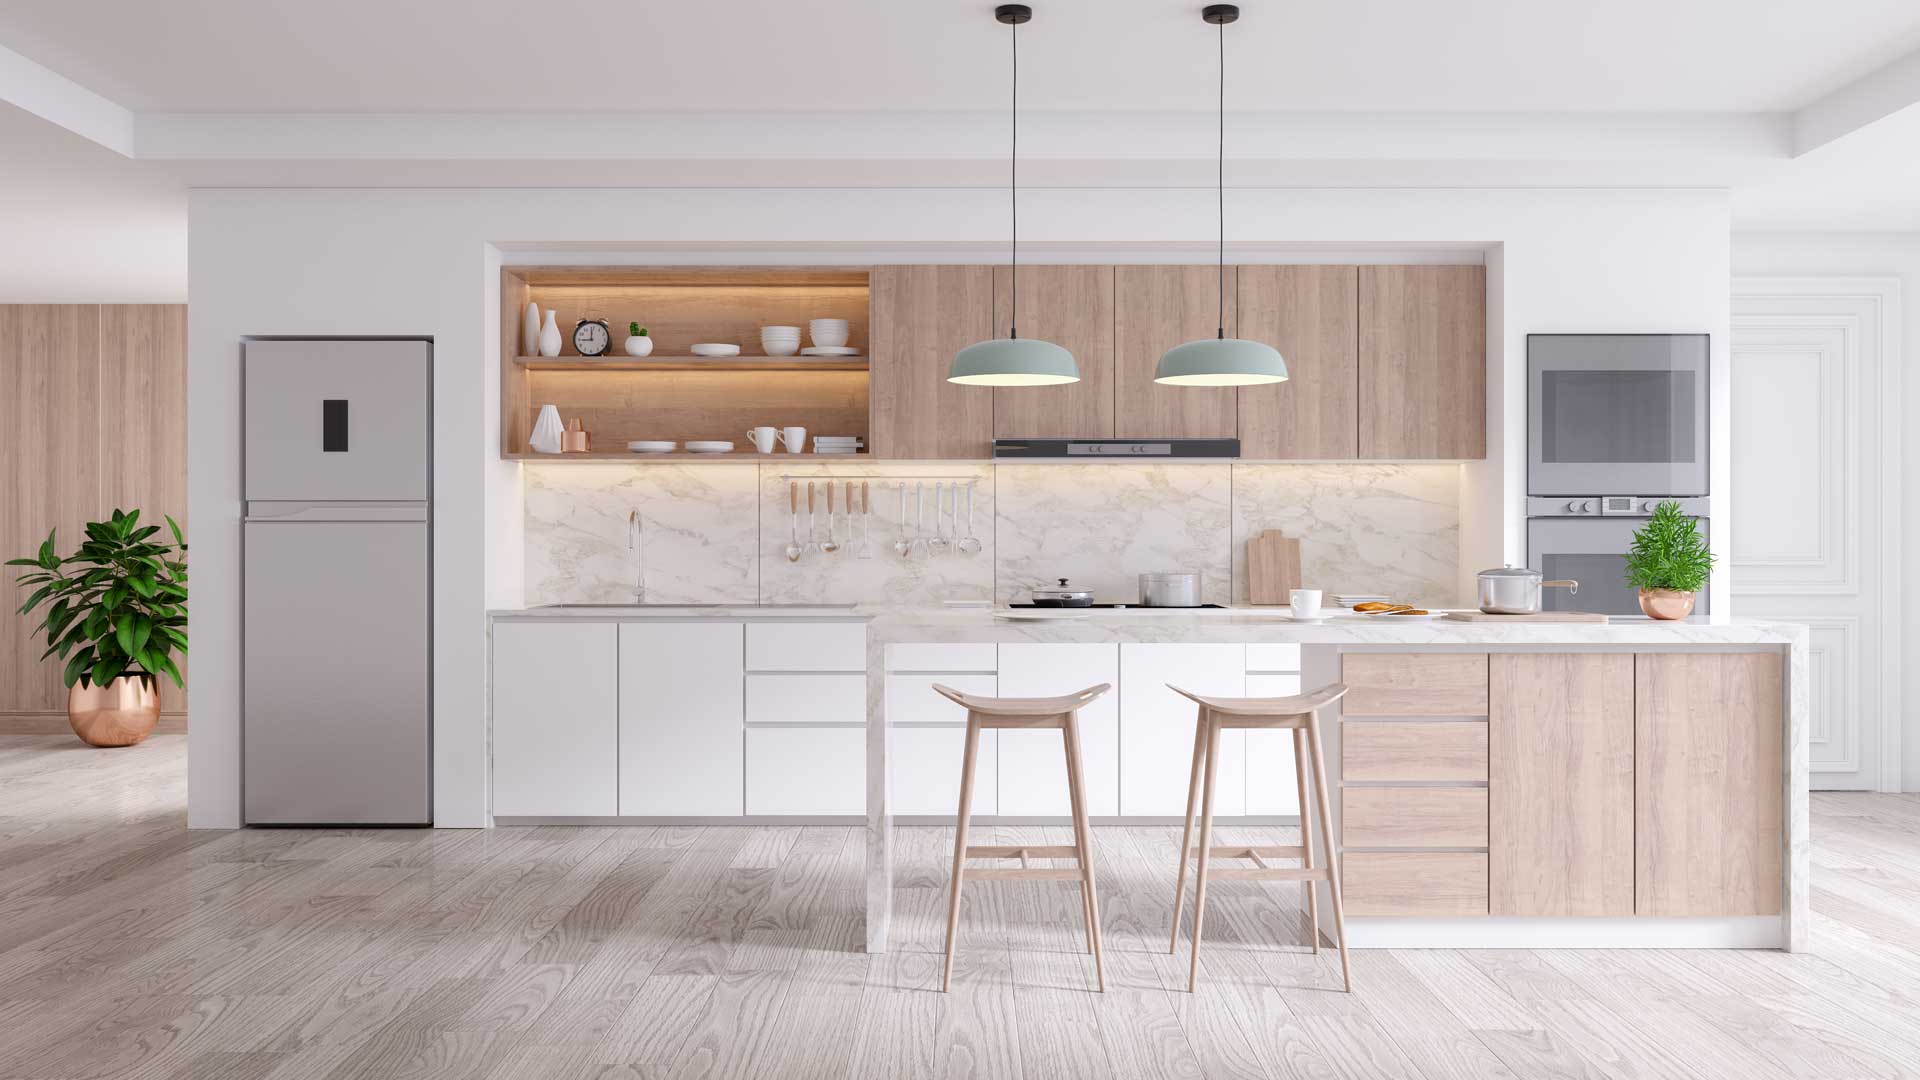 Bright, modern kitchen